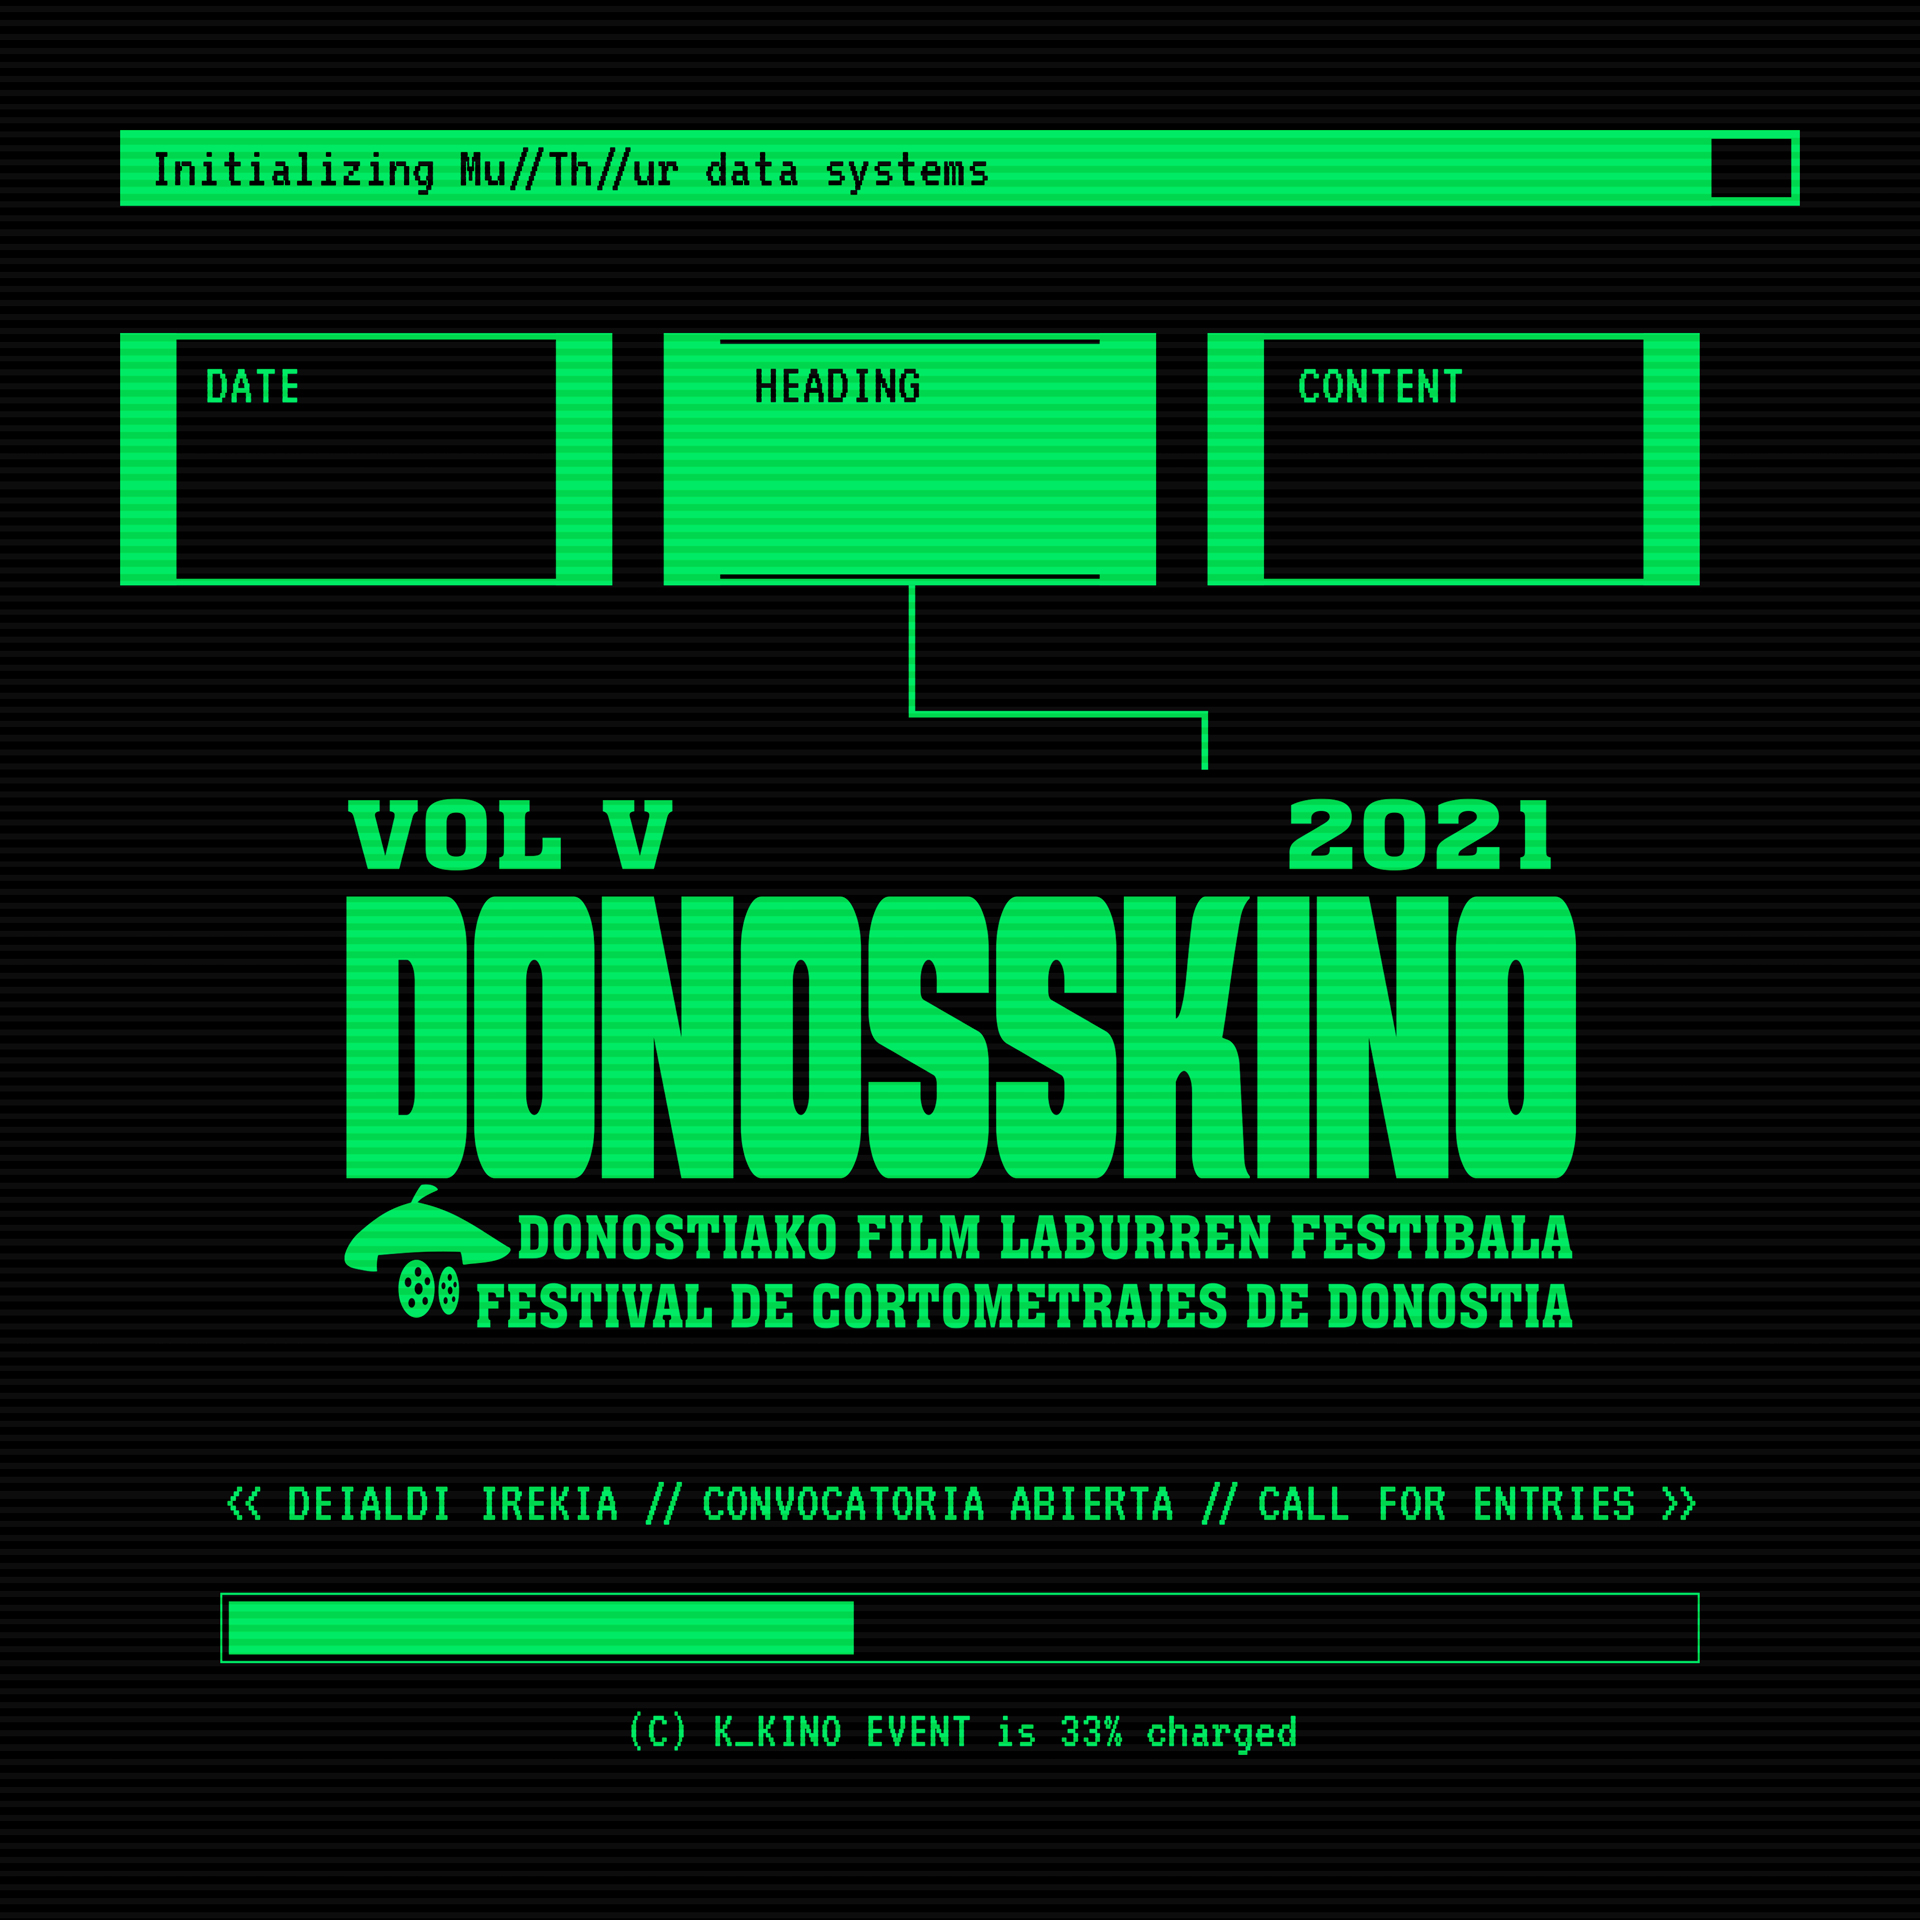 Cartel de la quinta edición de Donosskino. Foto: Donosskino festibala